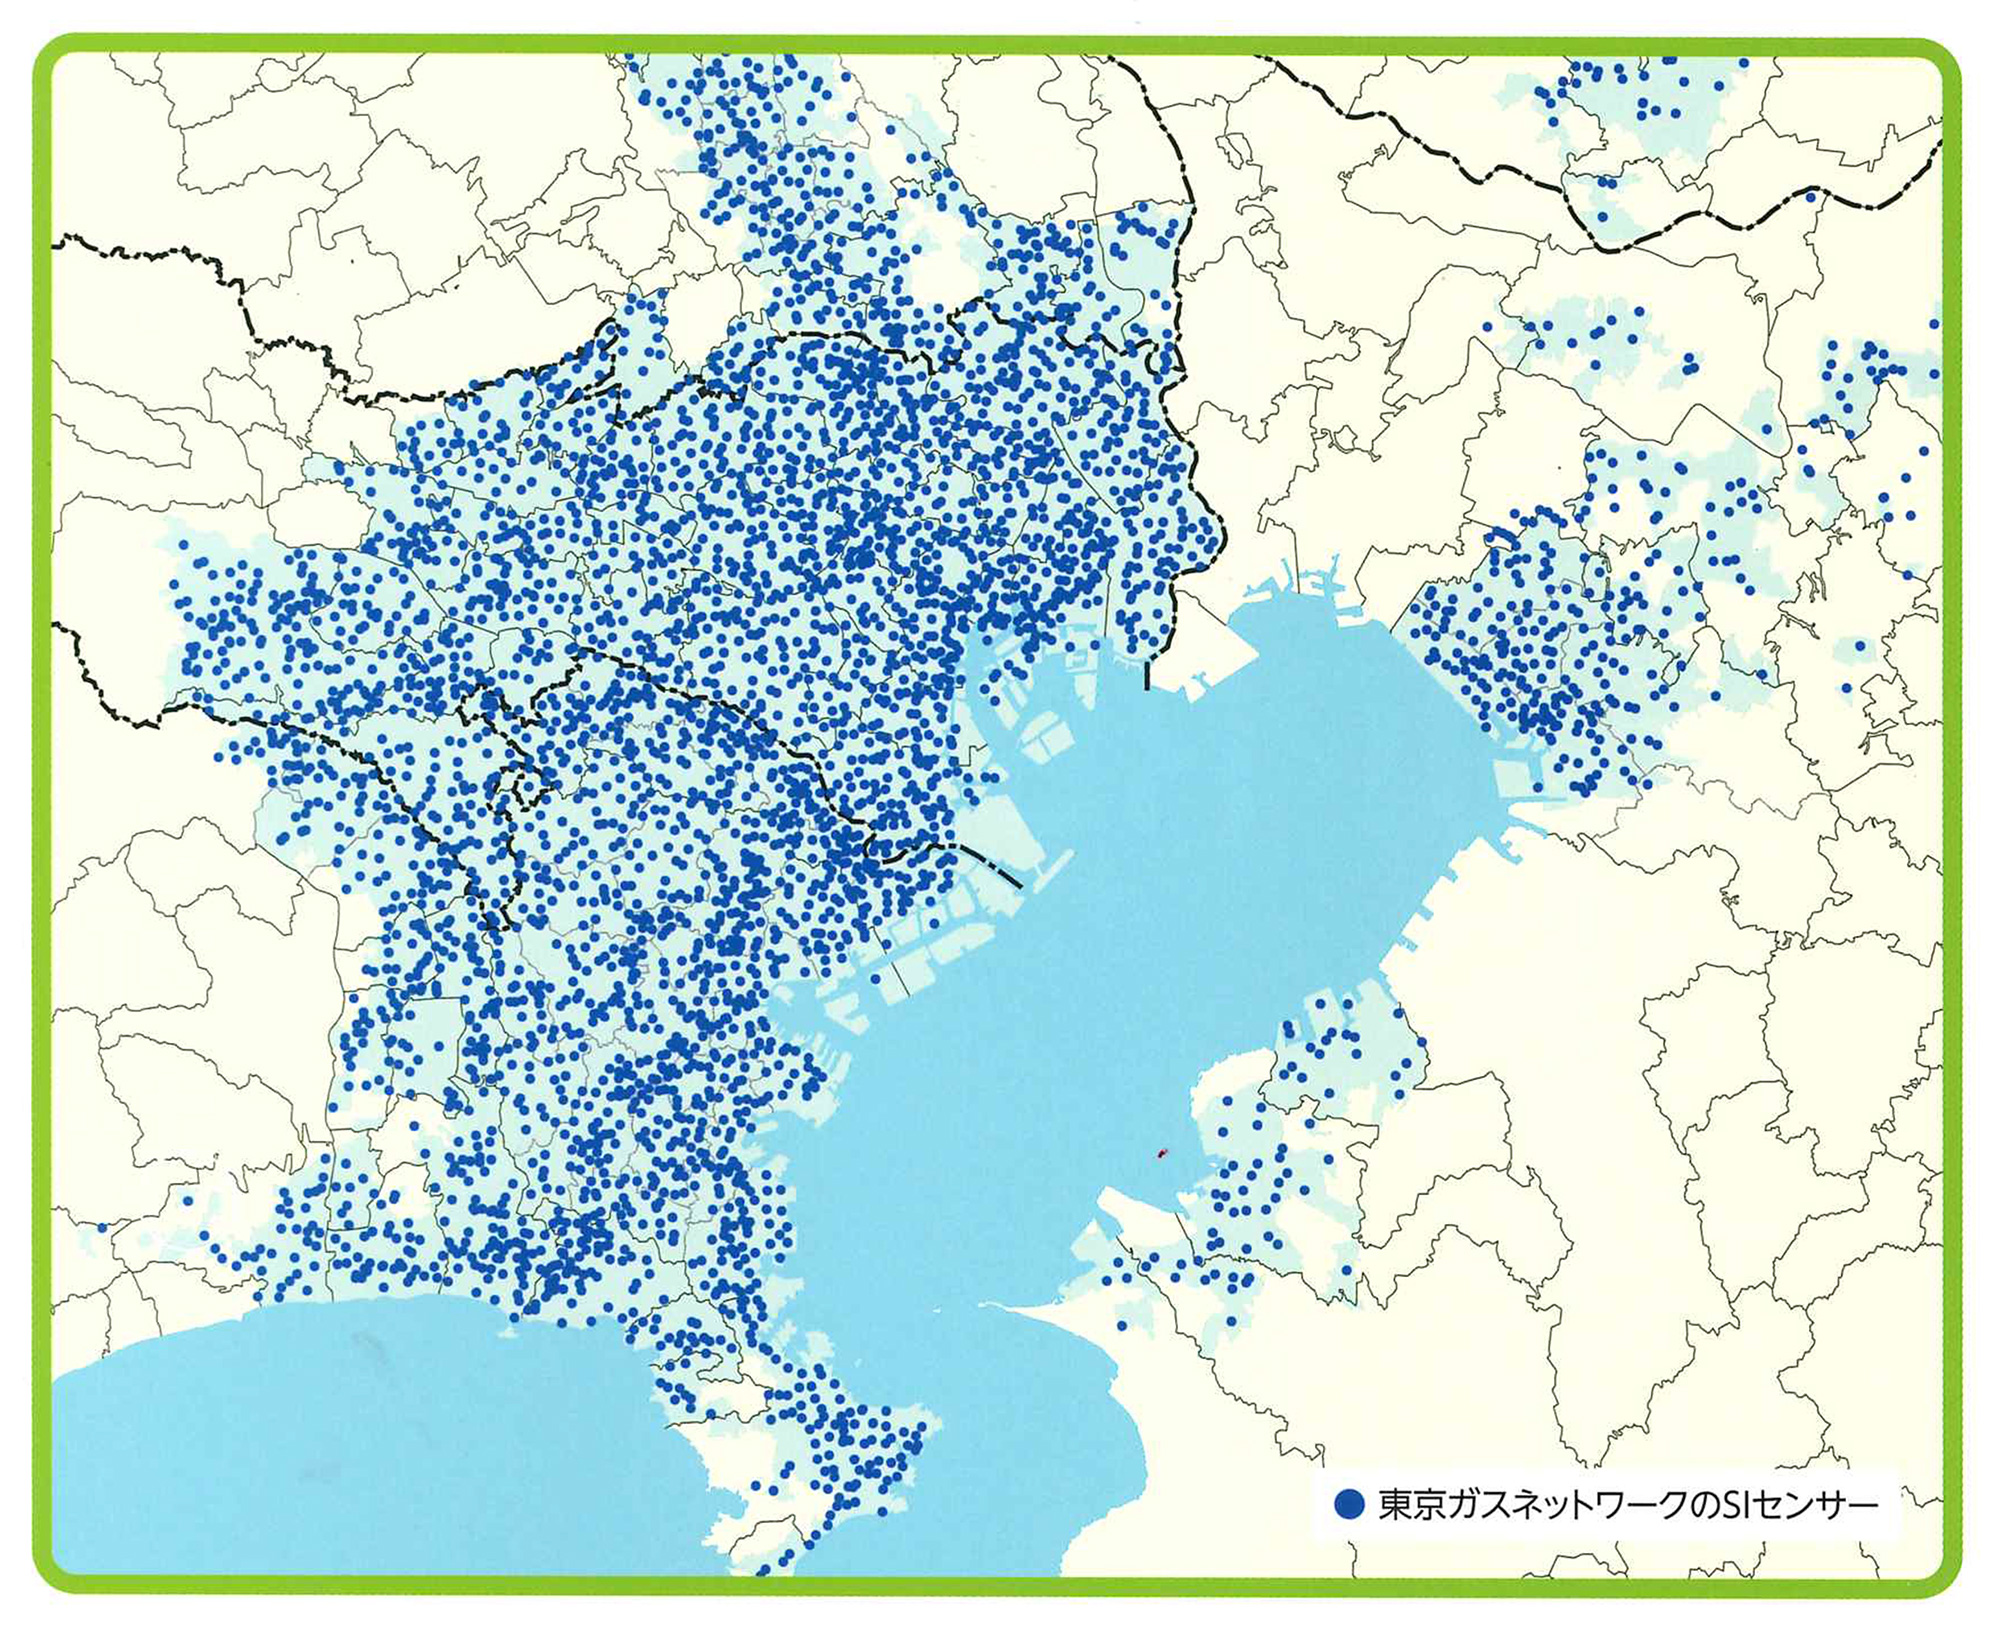 イラスト「東京ガスエリア内のSIセンサーの分布図」(東京ガスネットワーク)